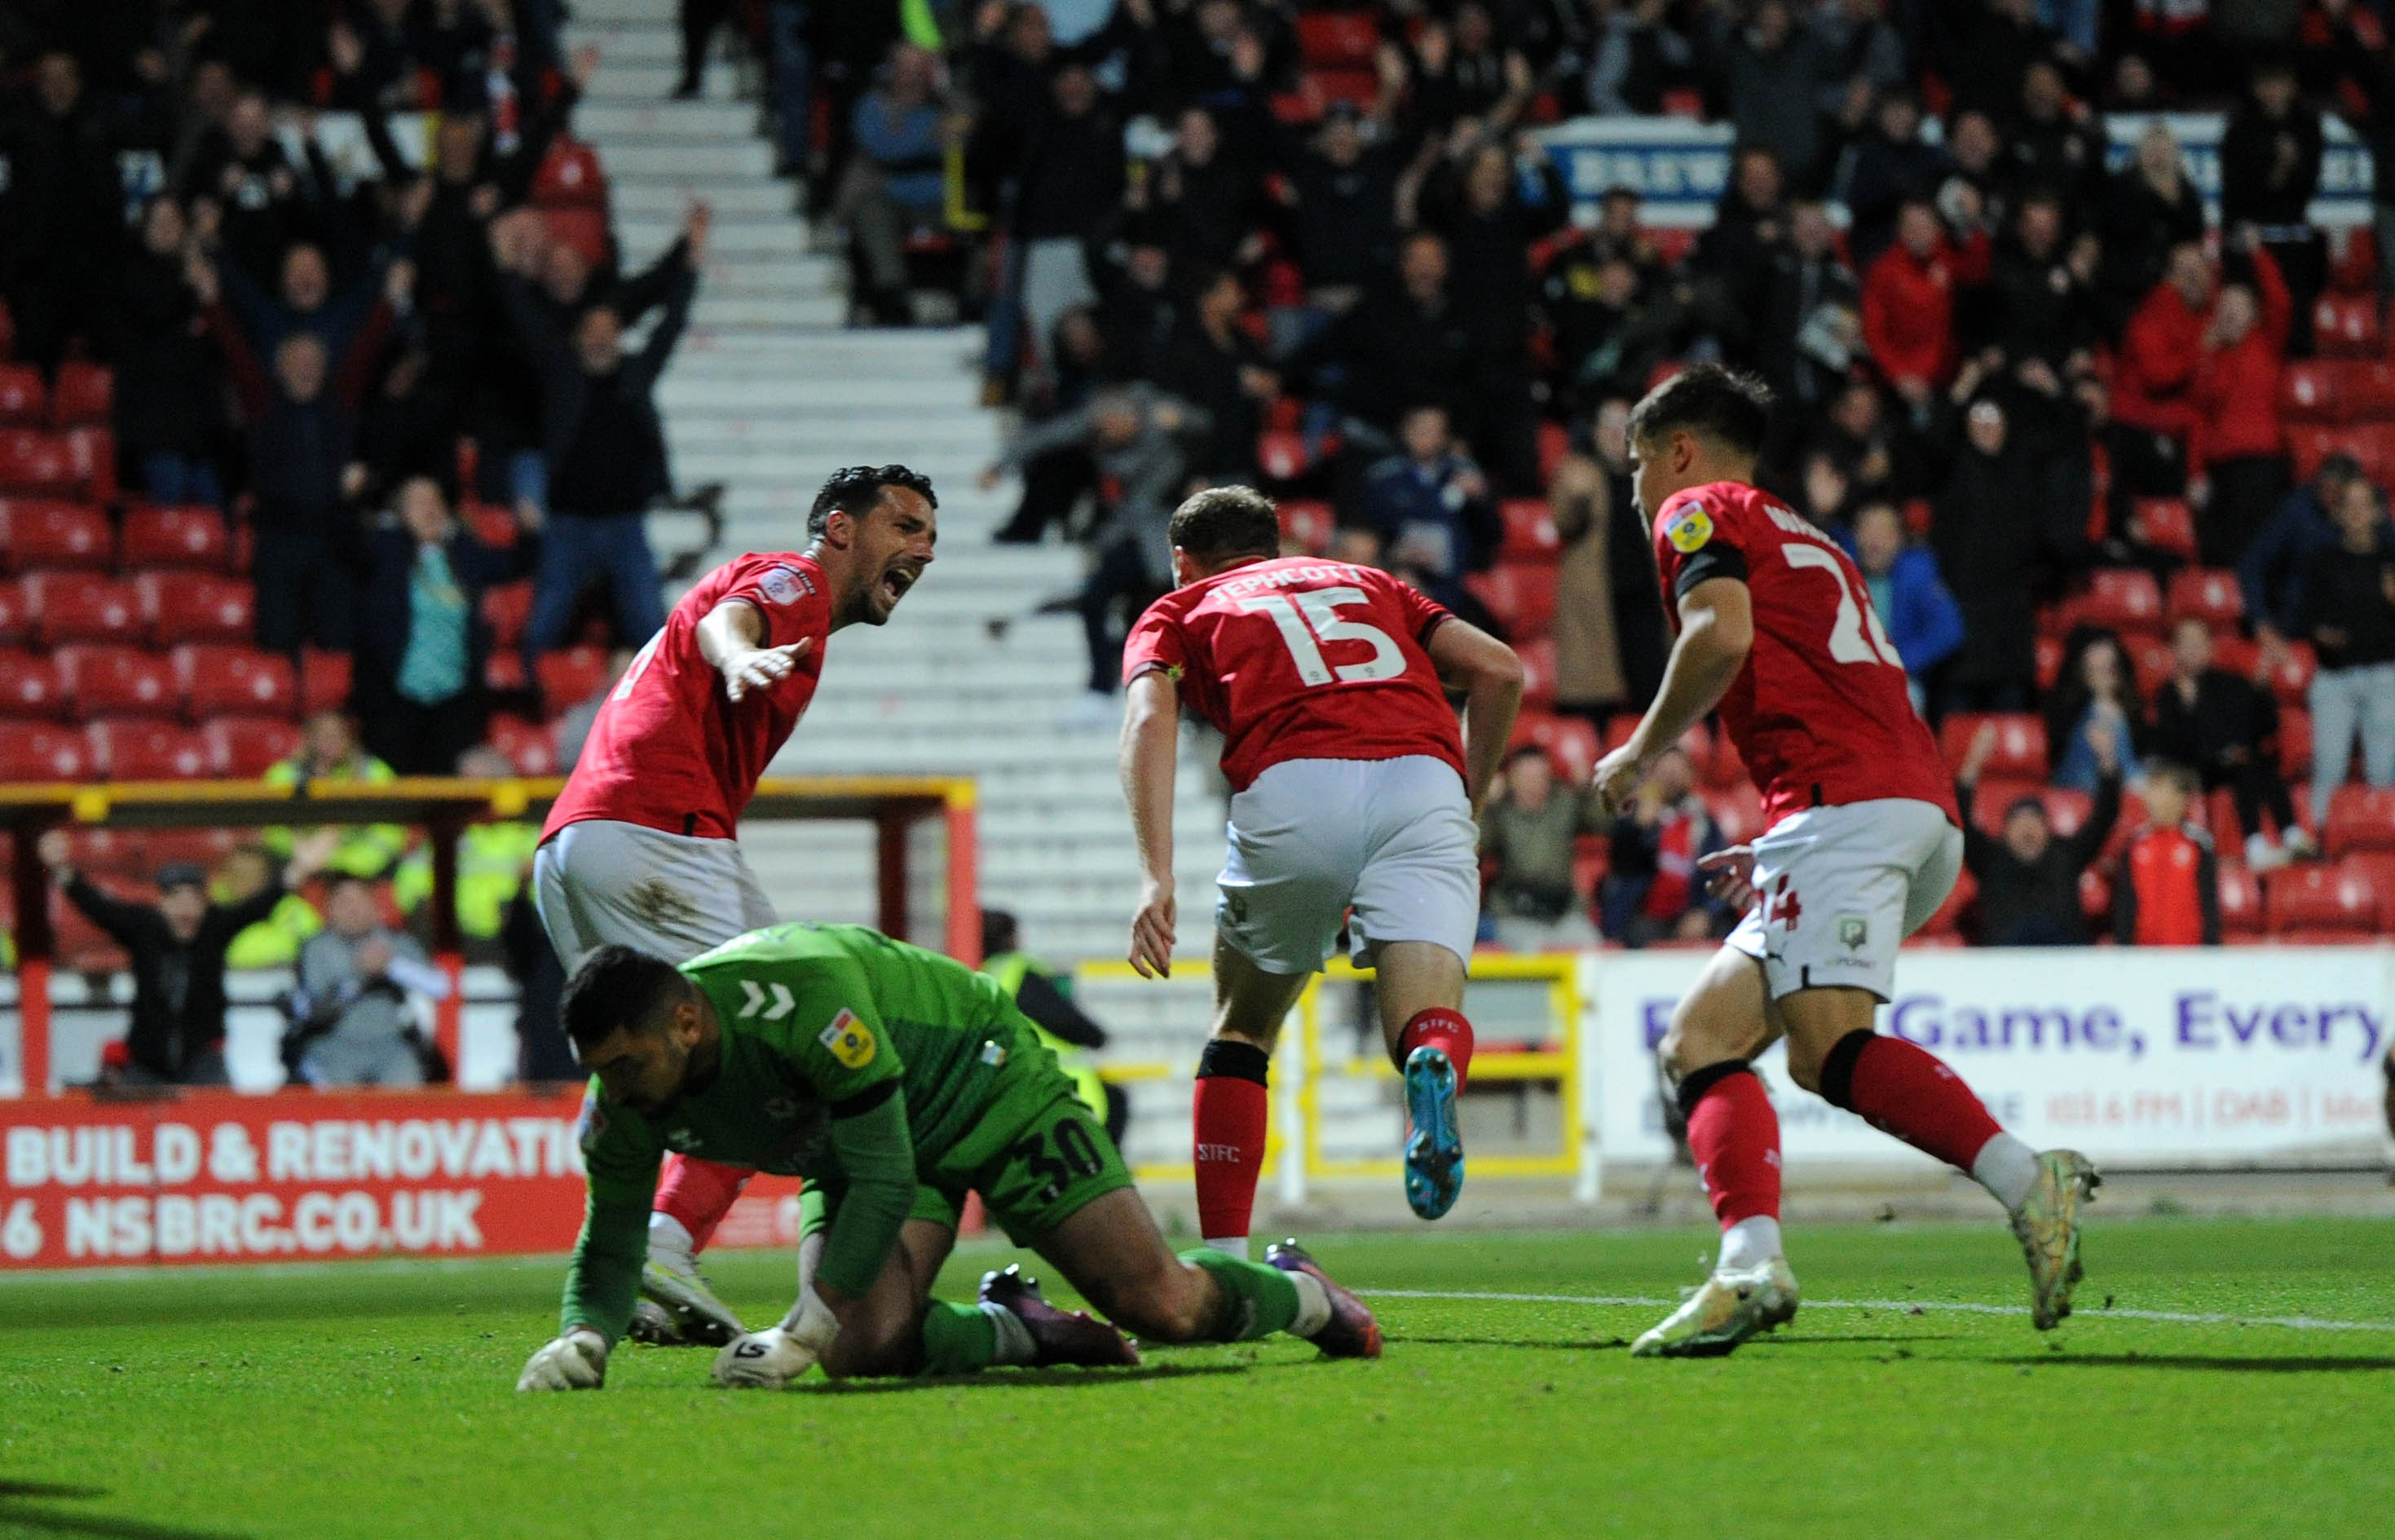 Luke Jephcott reveals Swindon spoke about his winning goal before he scored it